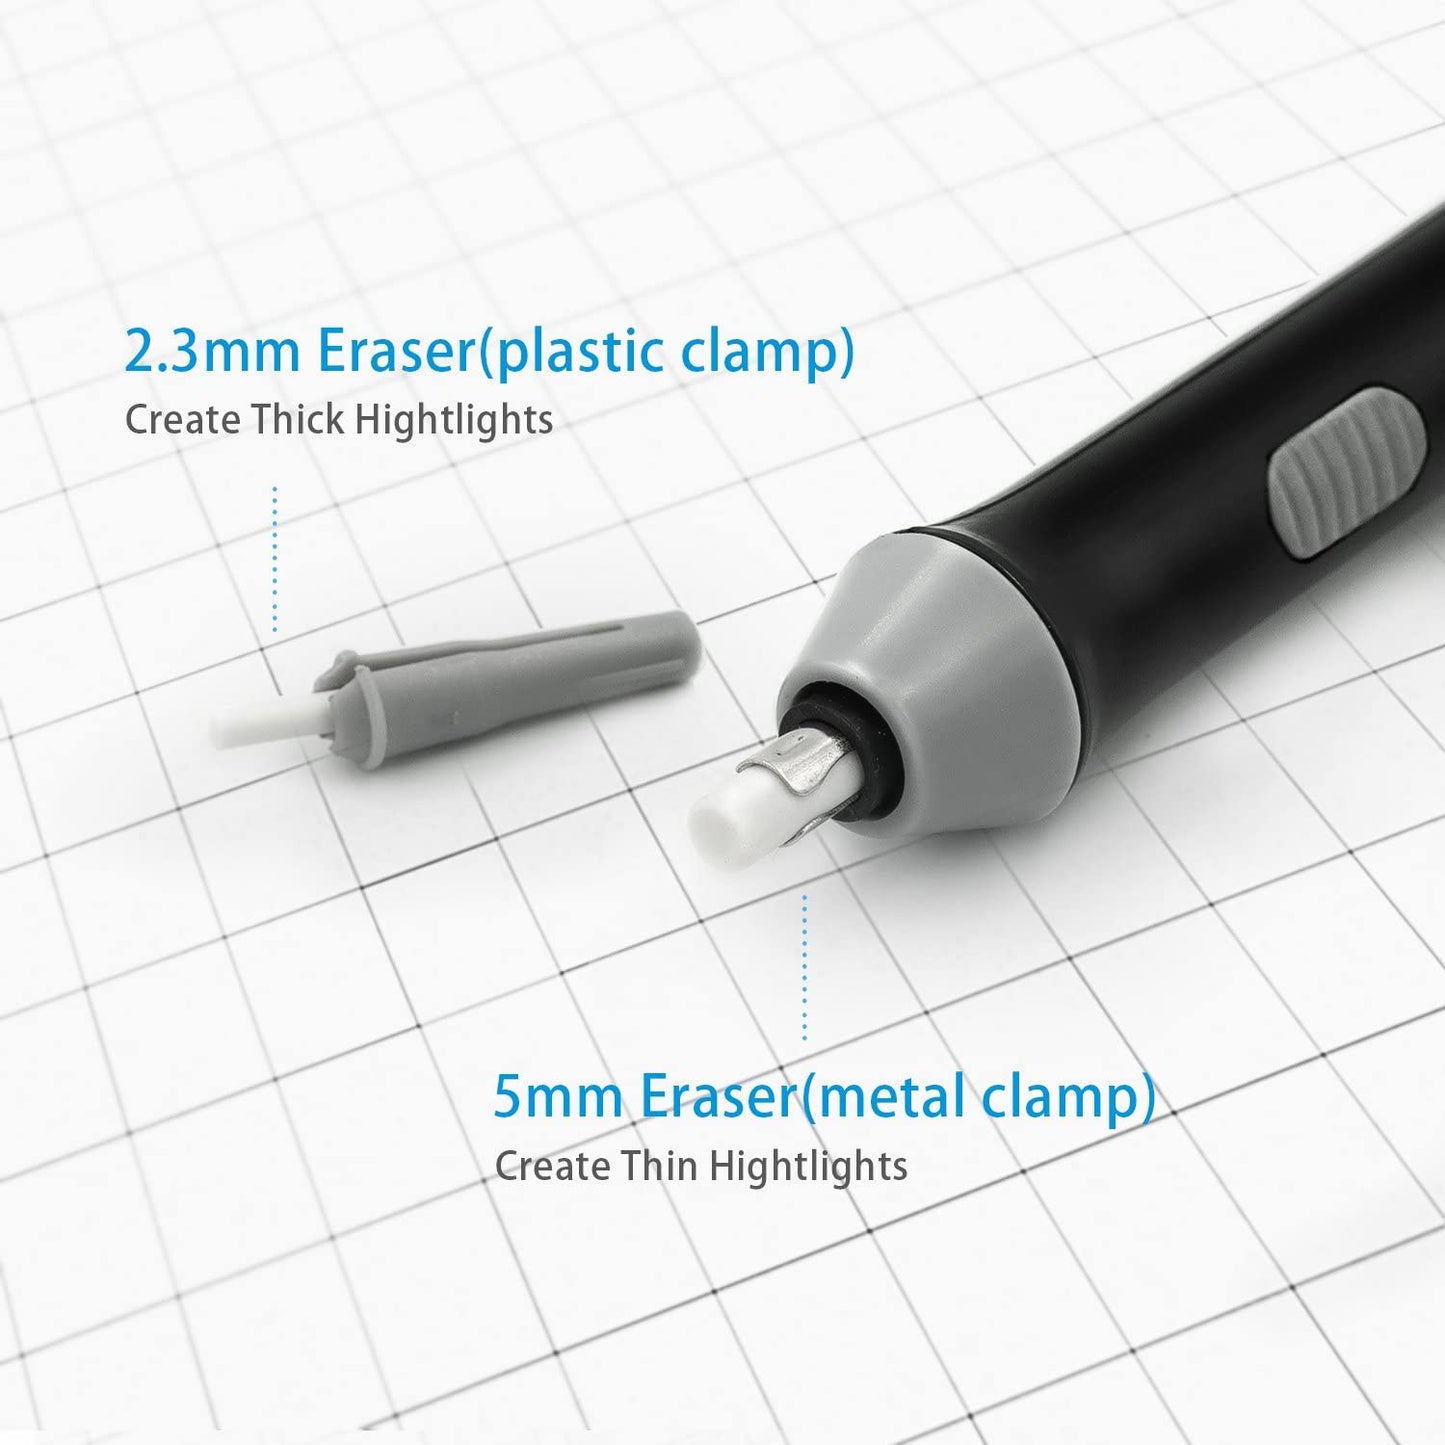 200Pcs 5mm Eraser Refills for Electric Eraser